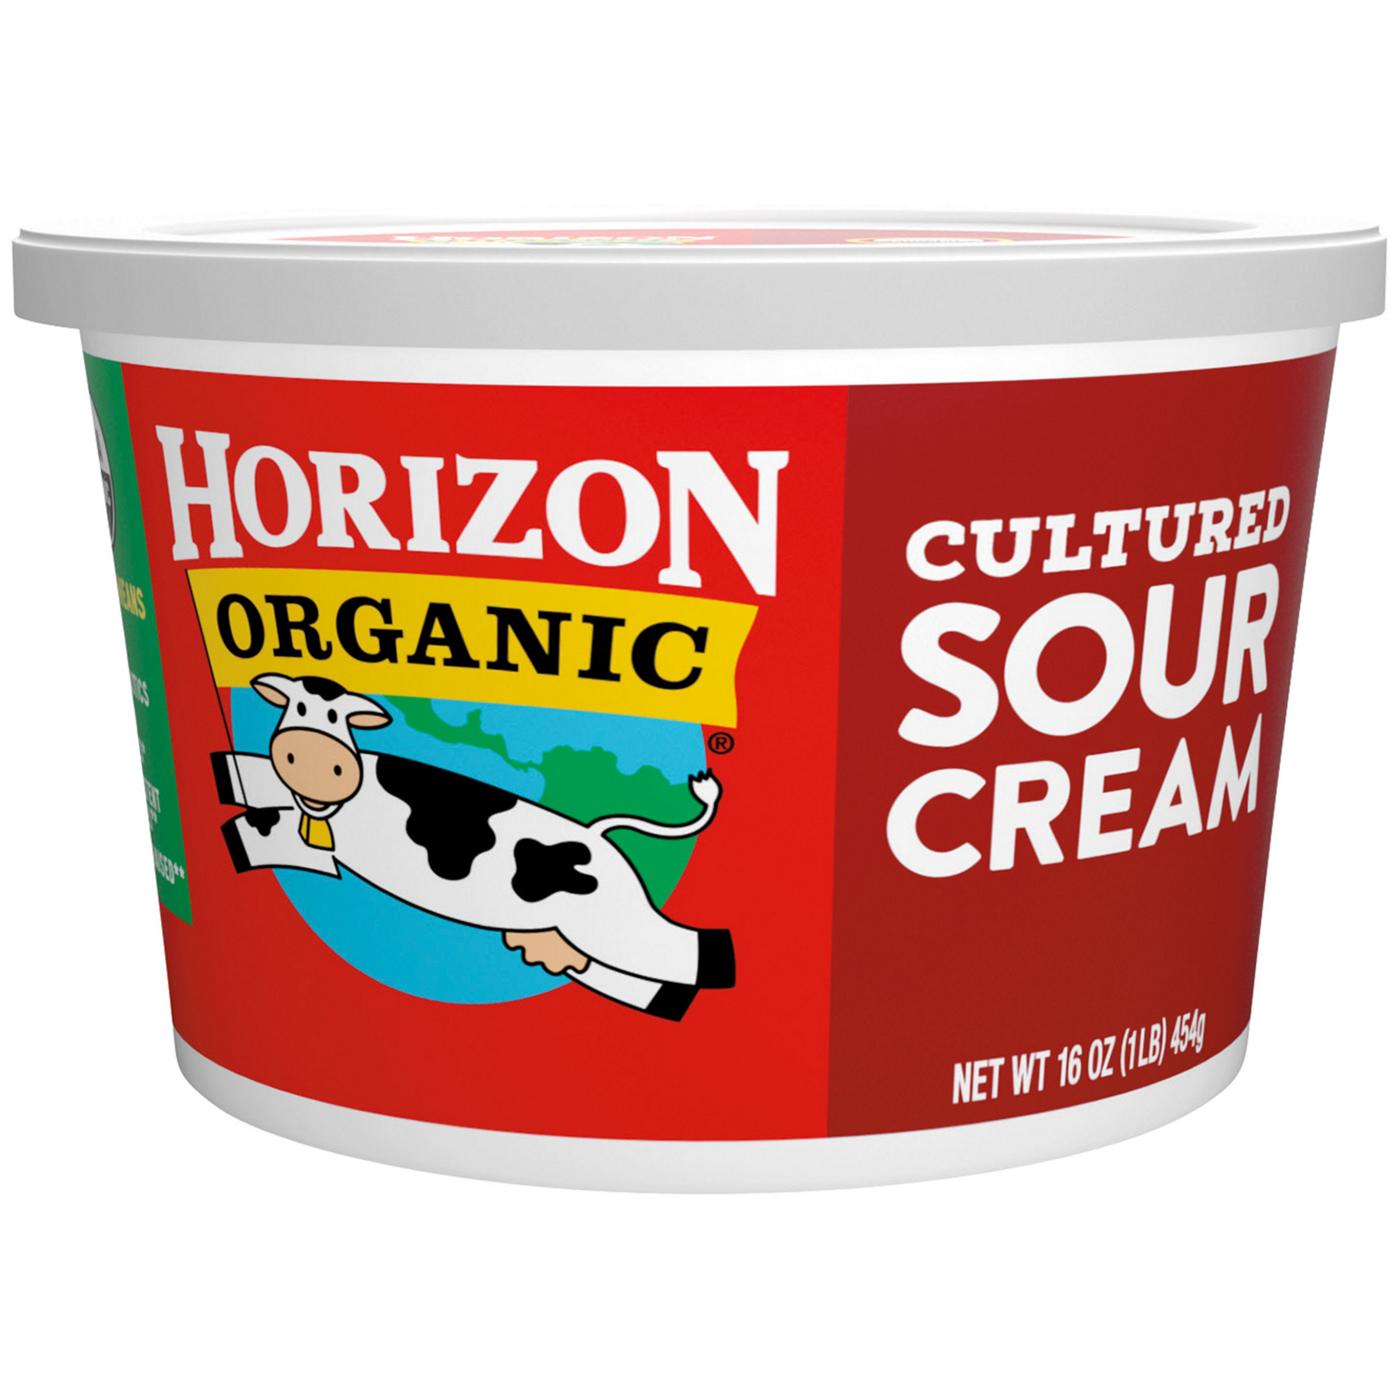 Horizon Organic Cultured Sour Cream; image 1 of 8